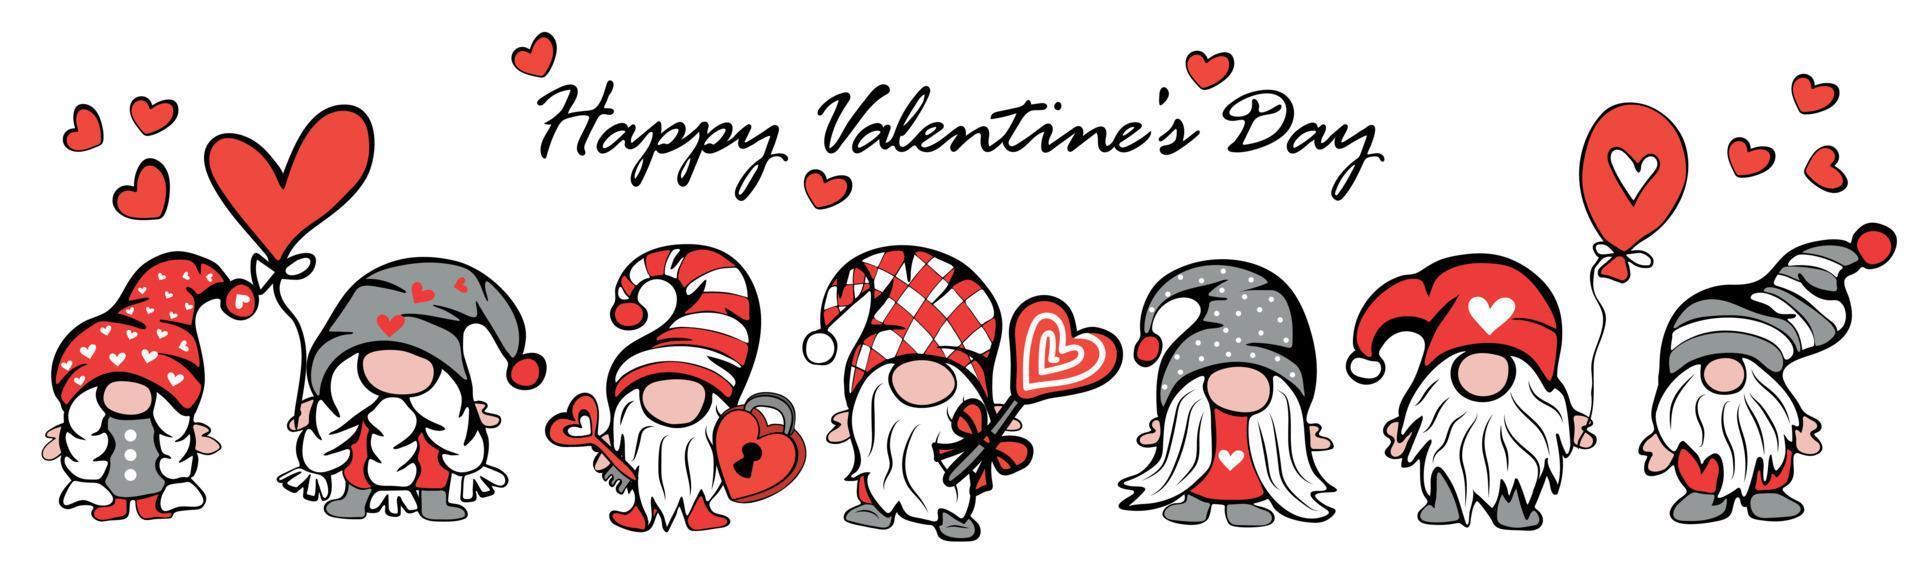 reeks van schattig kabouters voor Valentijn dag met hoeden, ballonnen en harten vector